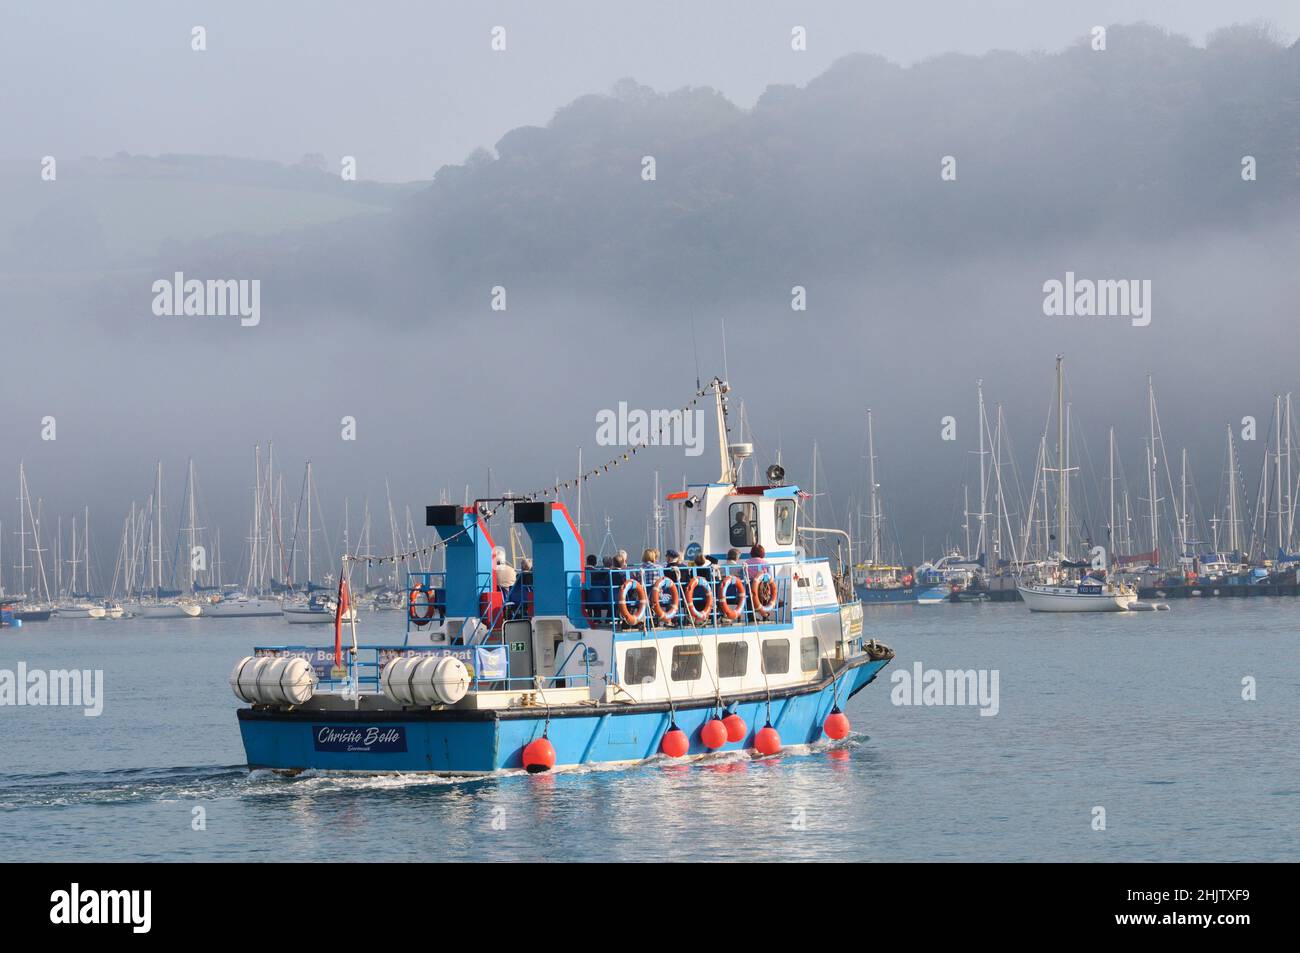 La gente a bordo de un ferry de pasajeros en el río Dart en una mañana tranquila y brumosa mientras el sol comienza a romper a través de la niebla. Dartmouth, Devon, Inglaterra, Reino Unido Foto de stock